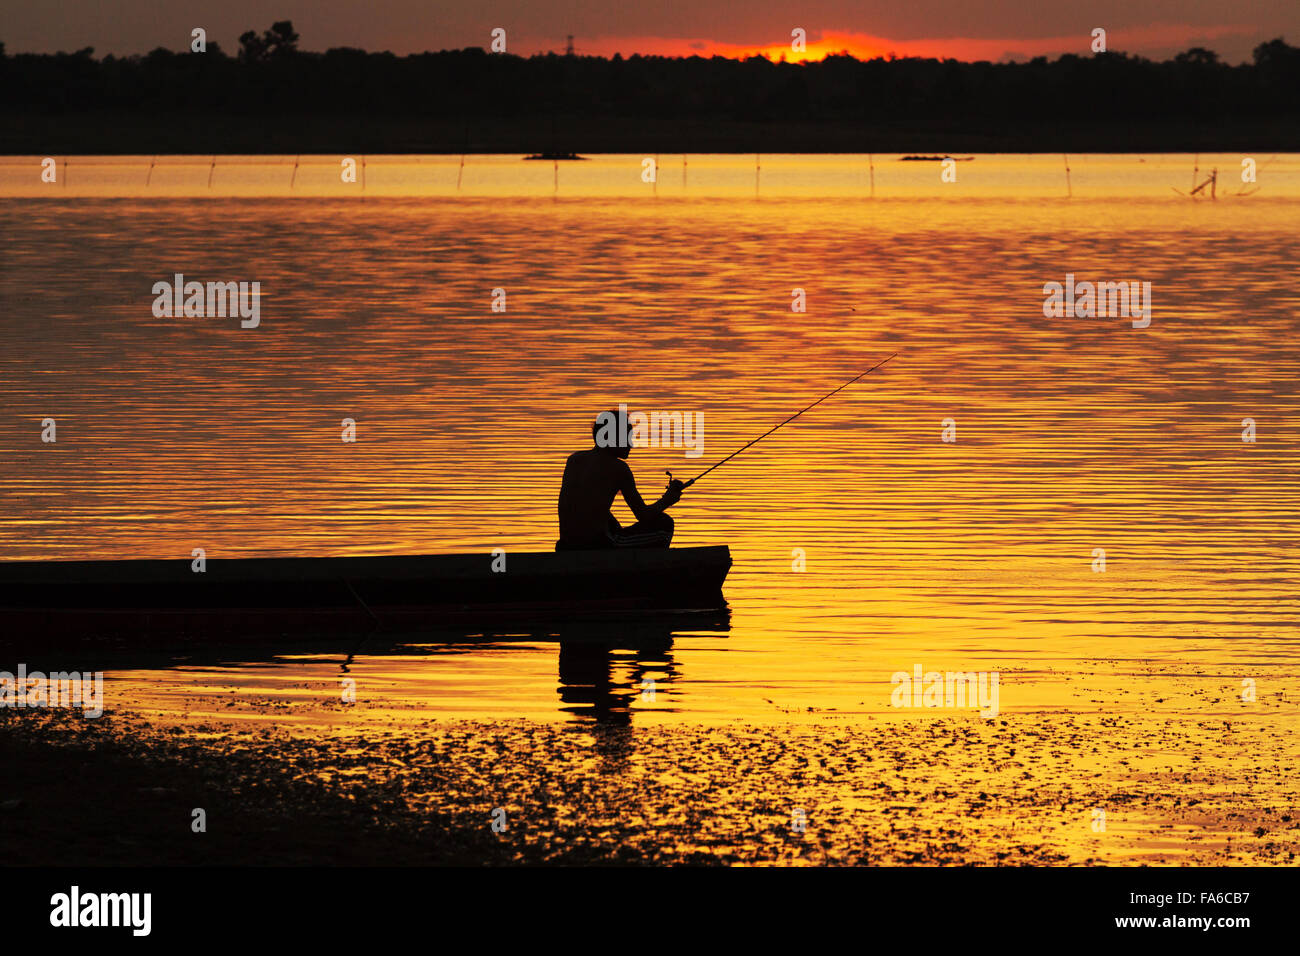 Silueta hombre sentado en un barco de pesca al atardecer Foto de stock